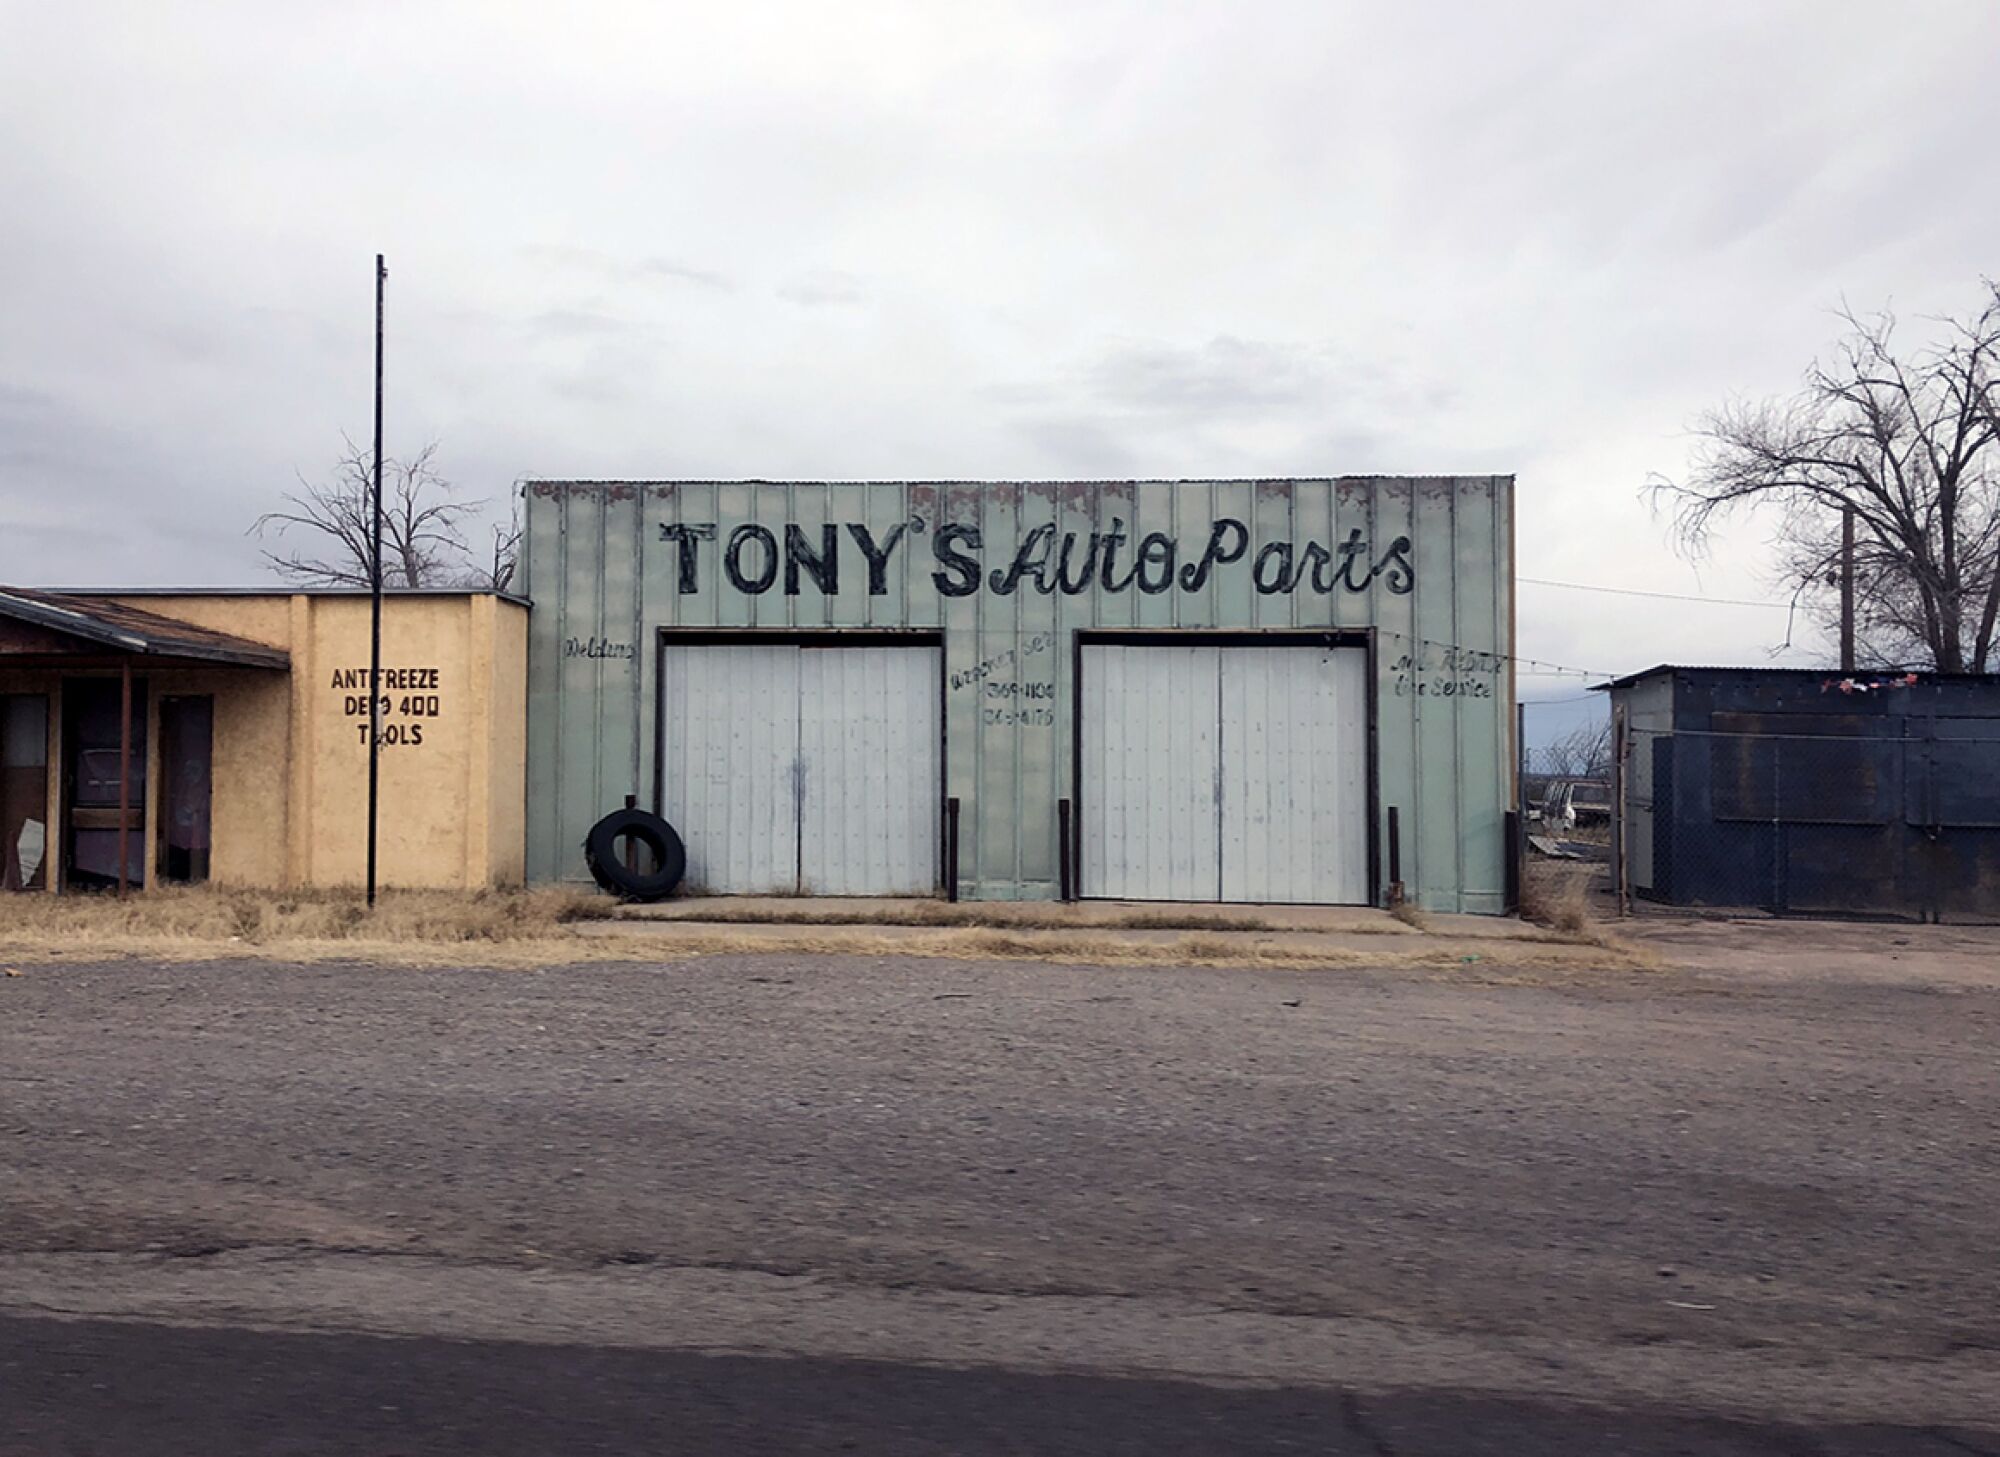 An auto parts shop in Sierra Blanca, Texas.